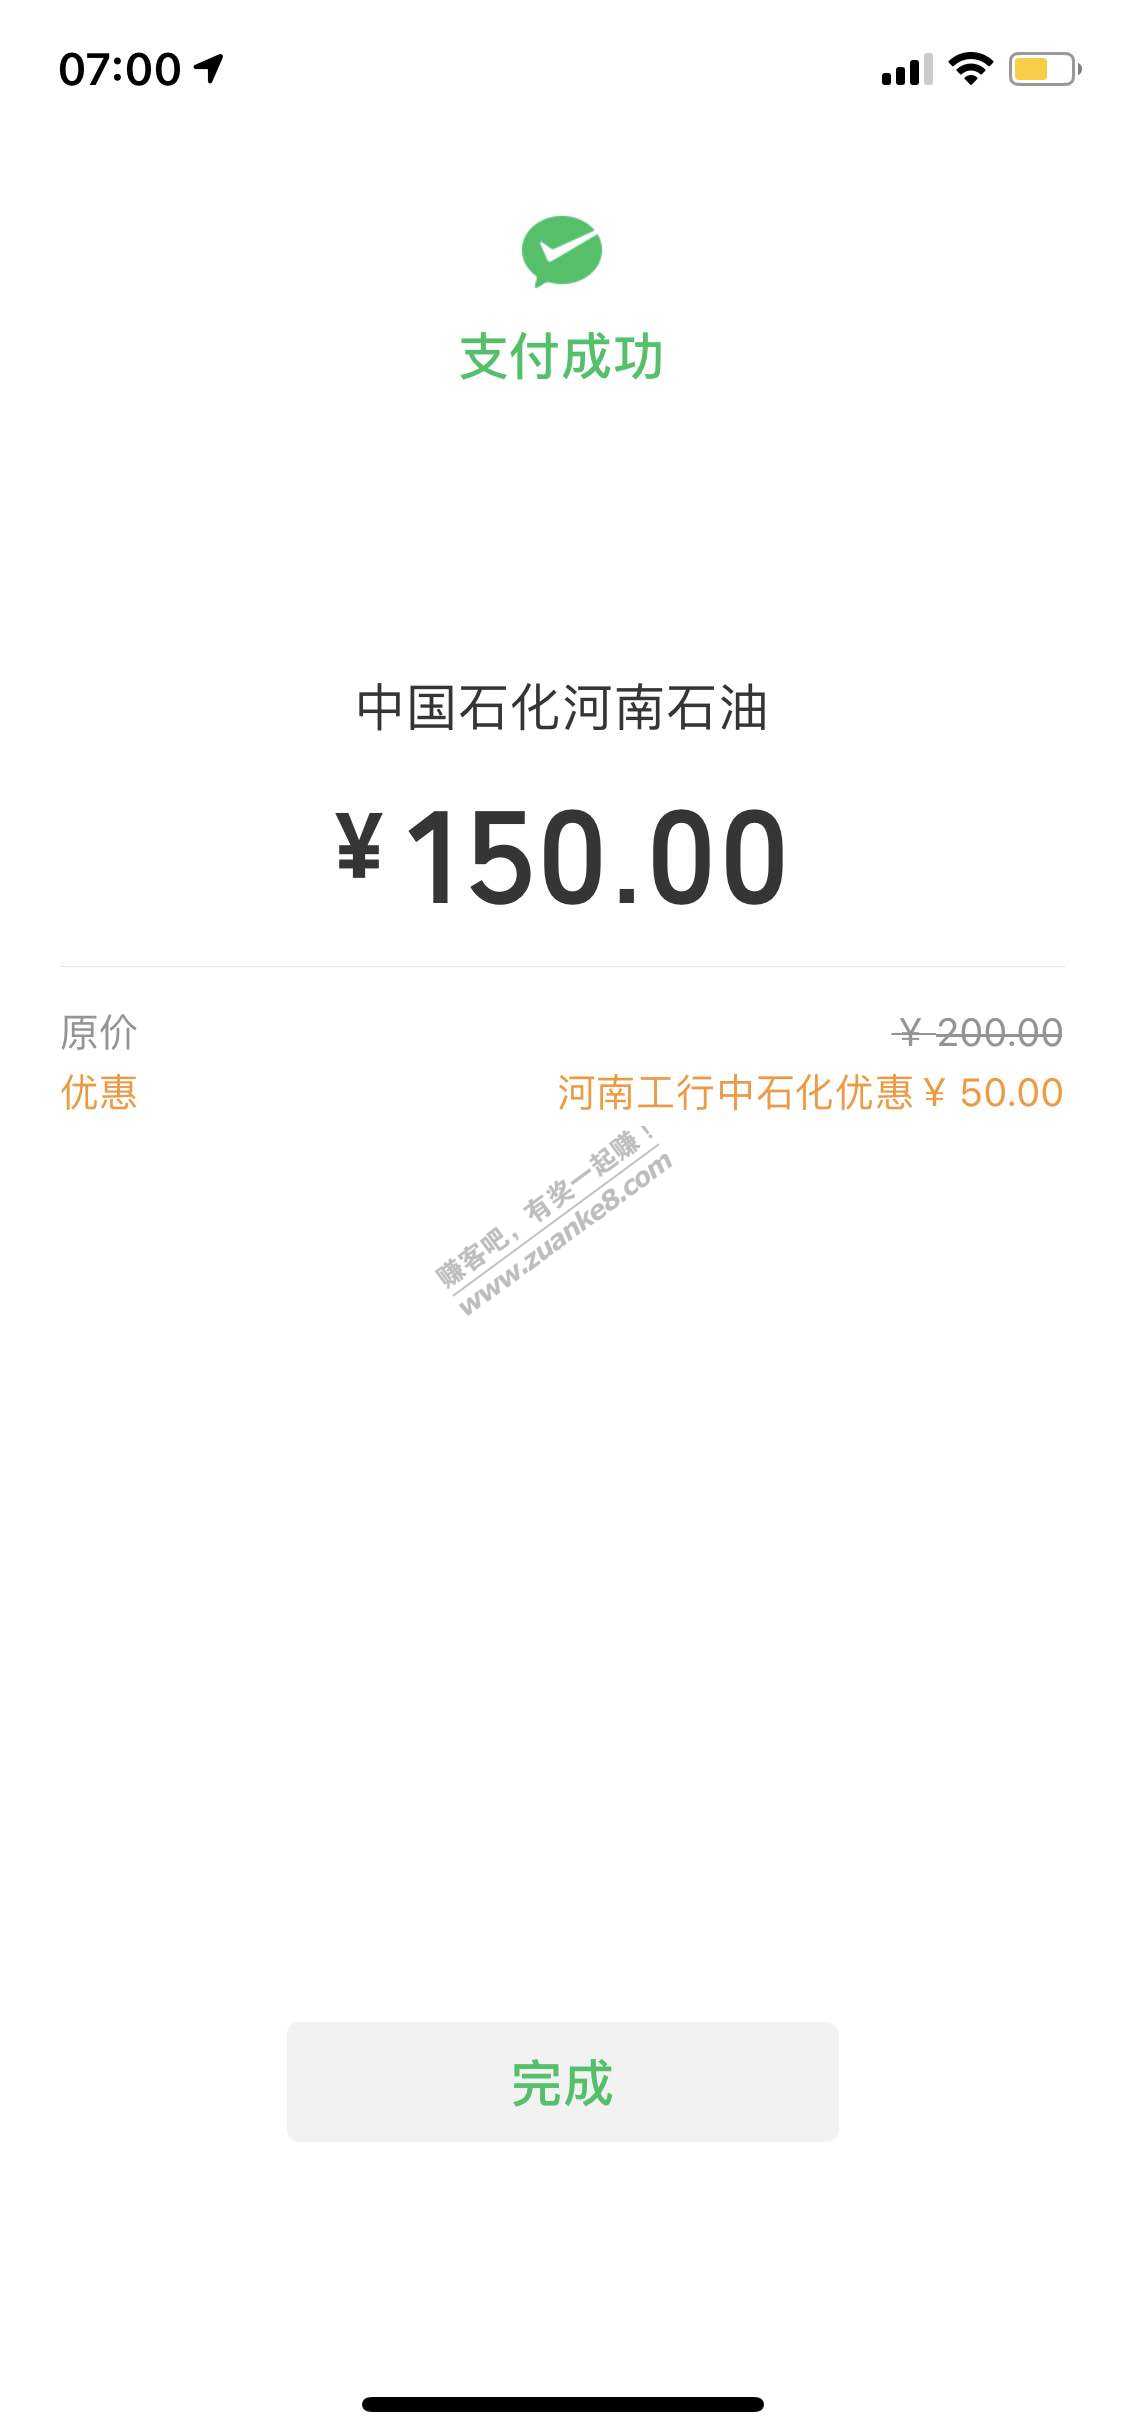 河南中石化200-50出了-快-惠小助(52huixz.com)